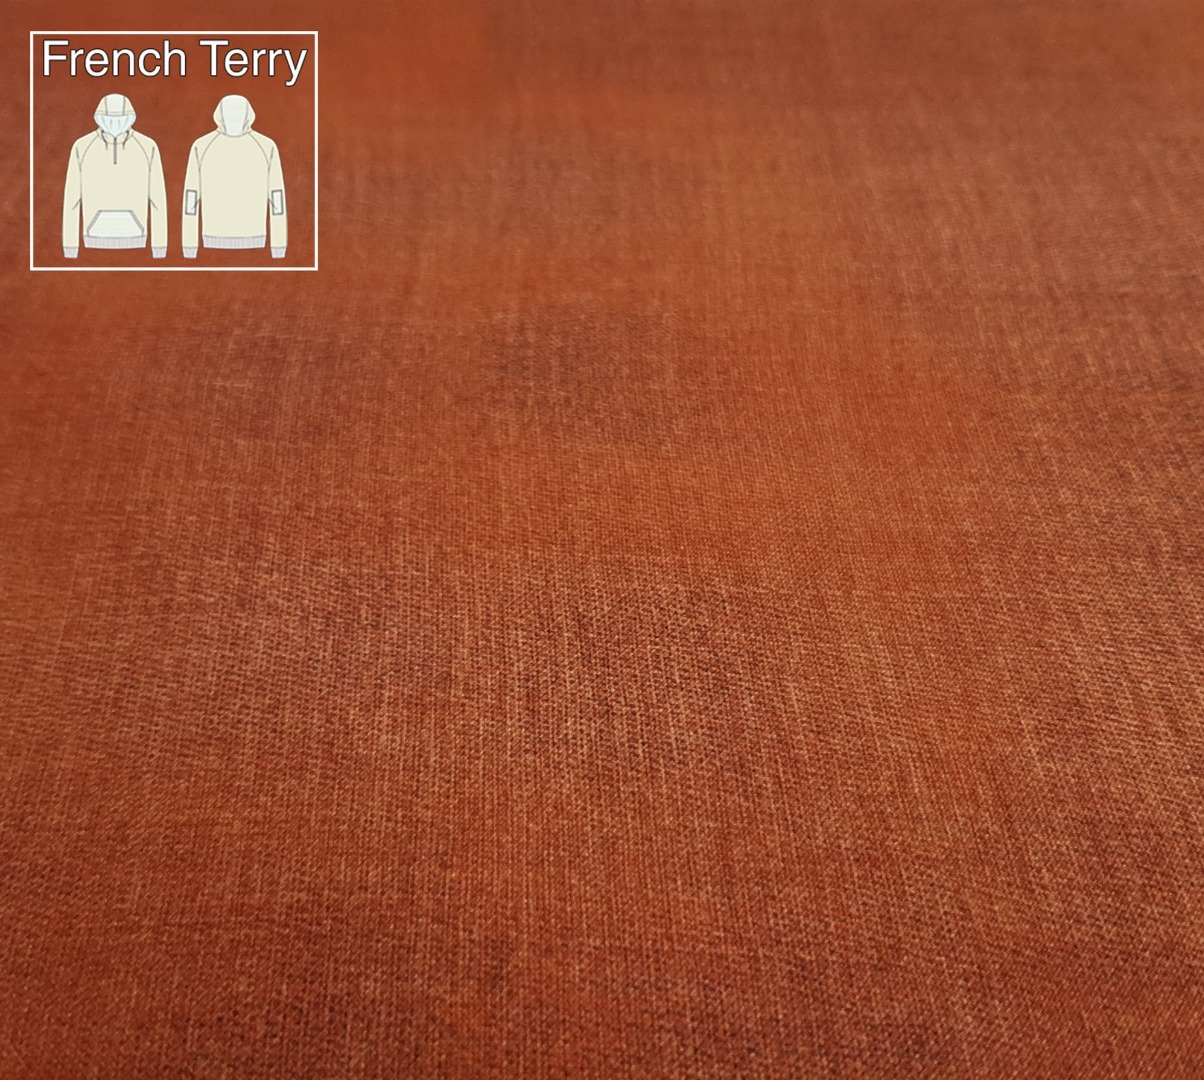 05m Sweat French Terry Gots Digitaldruck Jeansoptik edel rost